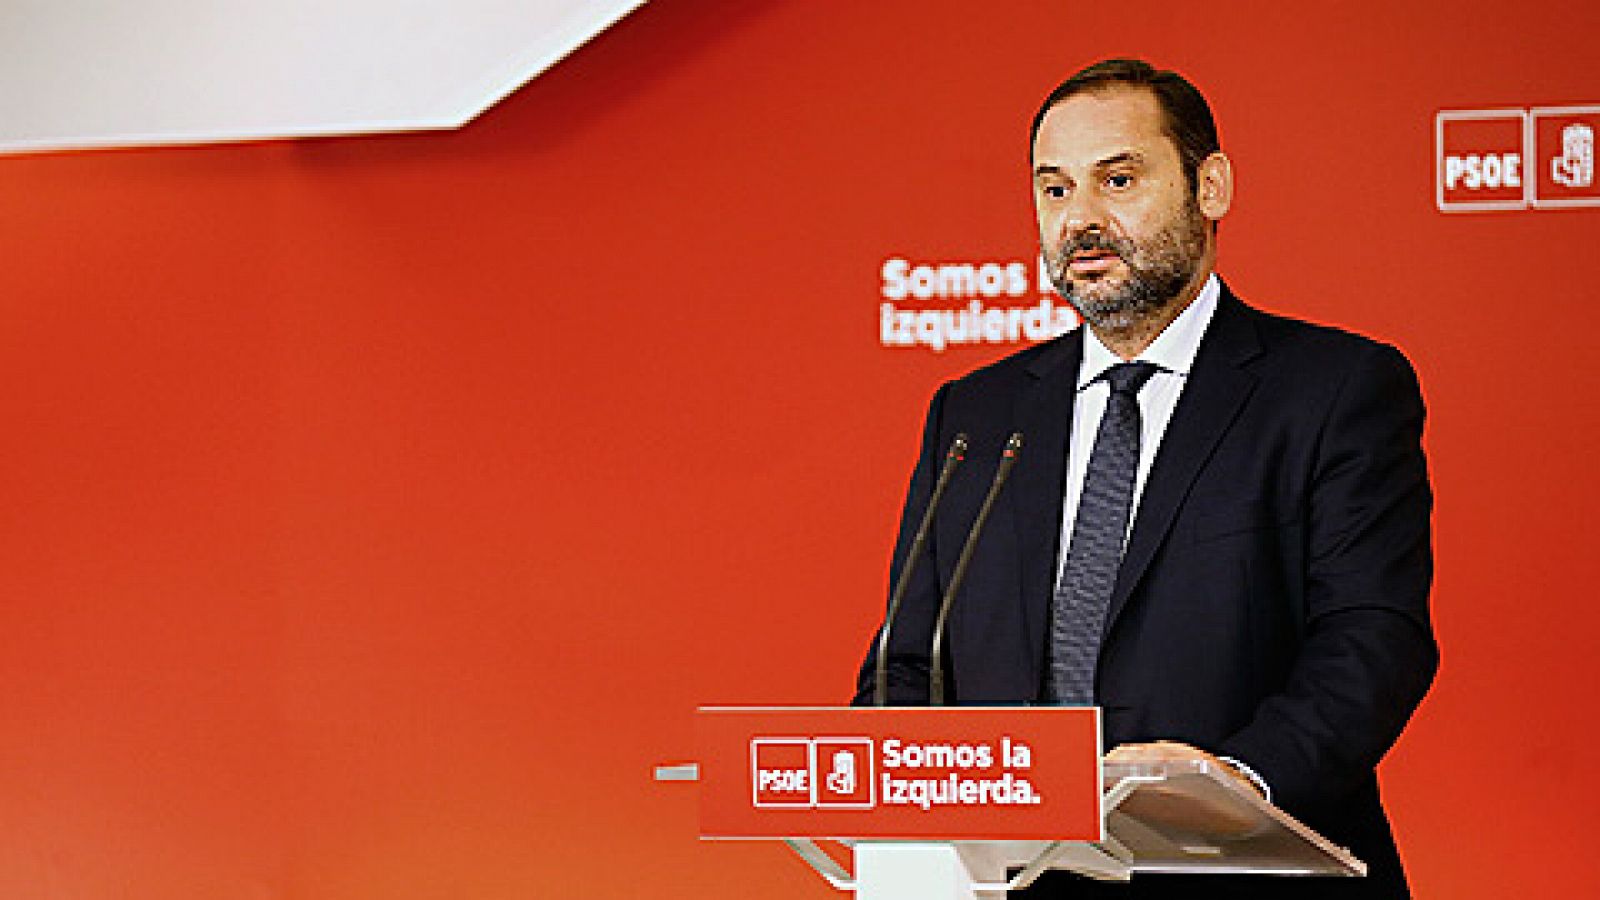 El PSOE acusa a Puigdemont de "abusar" de su buena fe y avisa de que el diálogo debe hacerse dentro de la ley